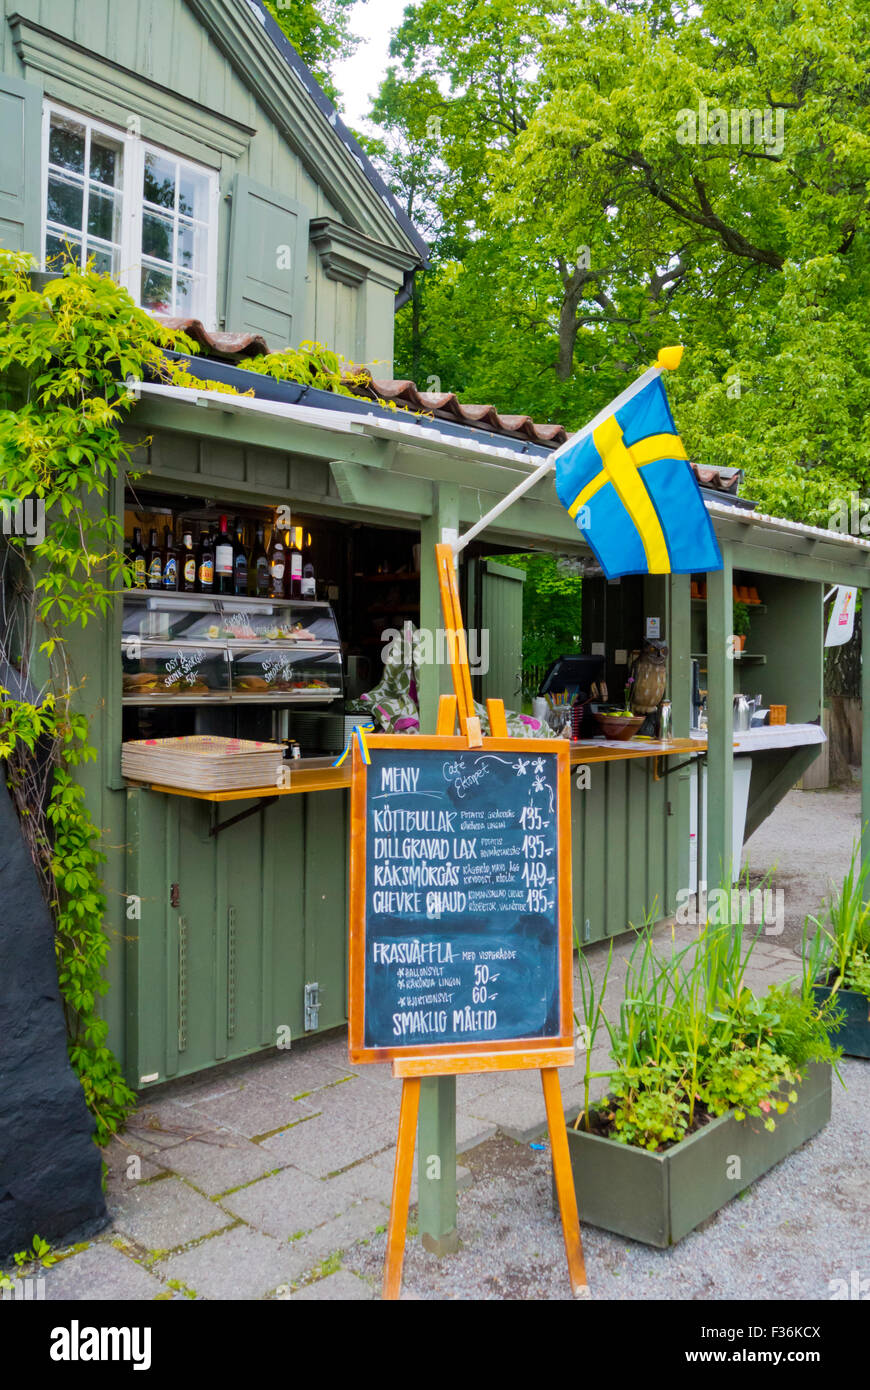 Cafe Ektorpet, Waldemarsudde, Djurgården island, Stockholm, Sweden Stock Photo